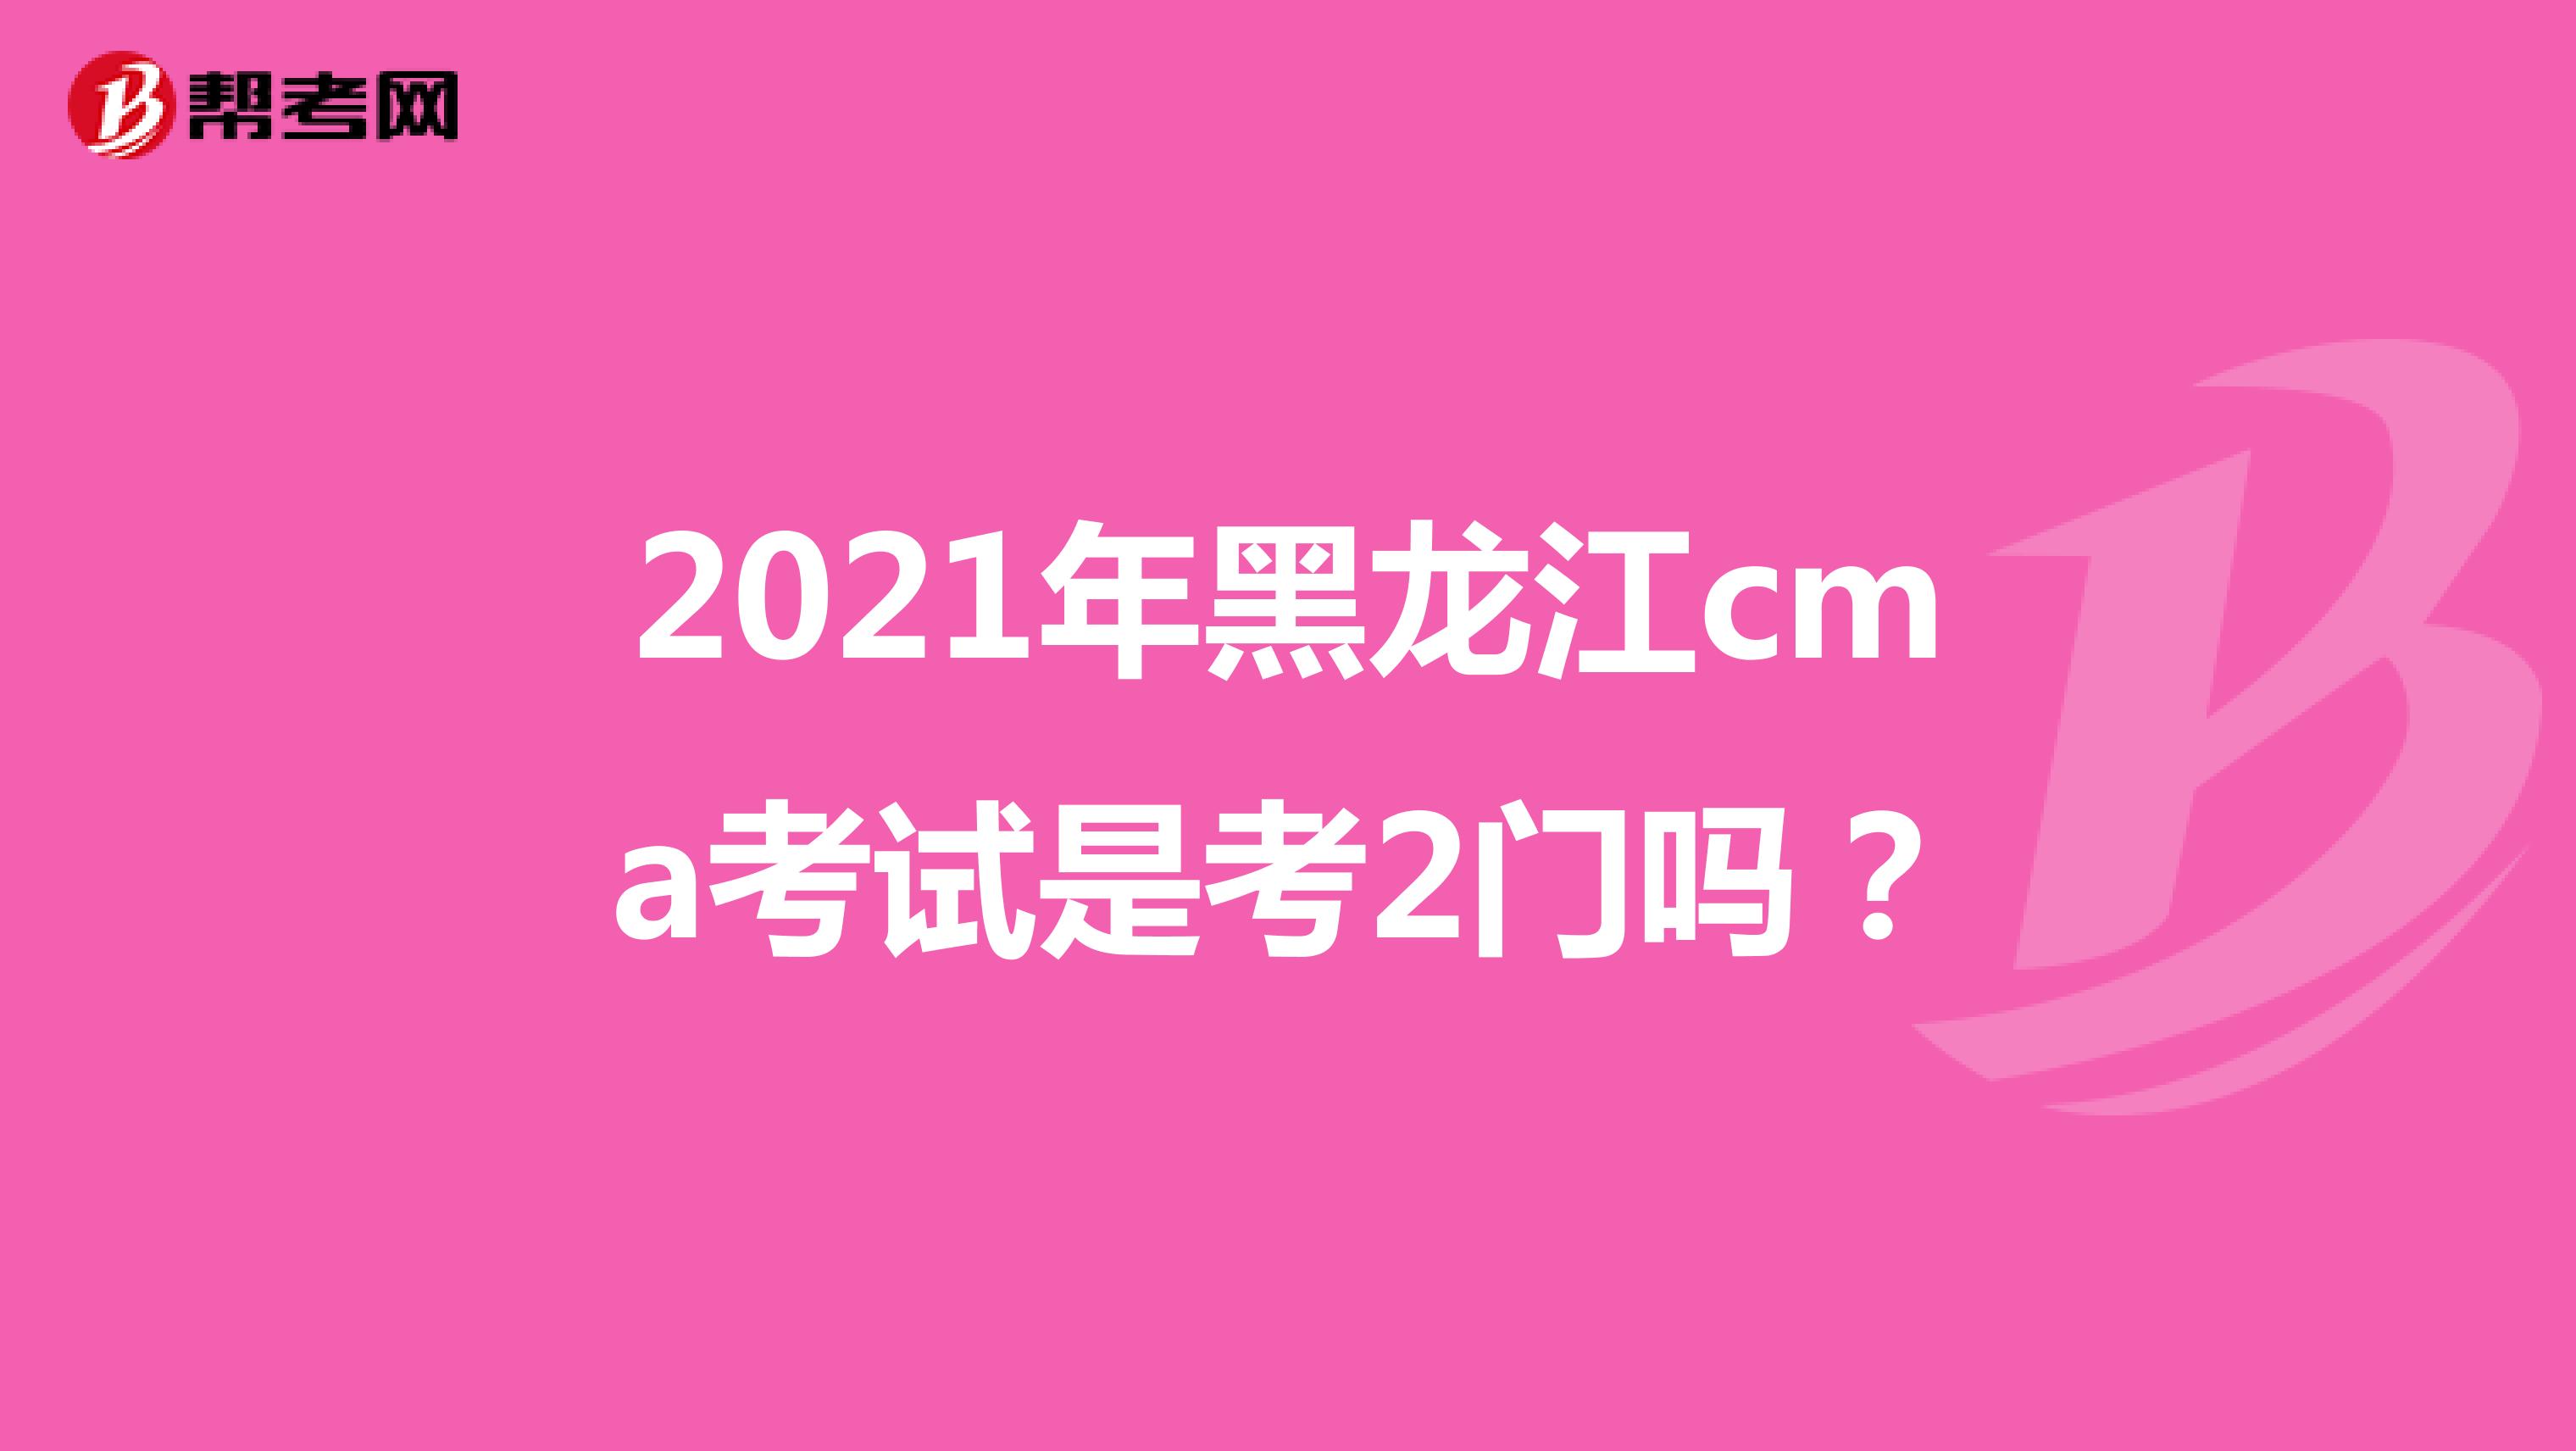 2021年黑龙江cma考试是考2门吗？